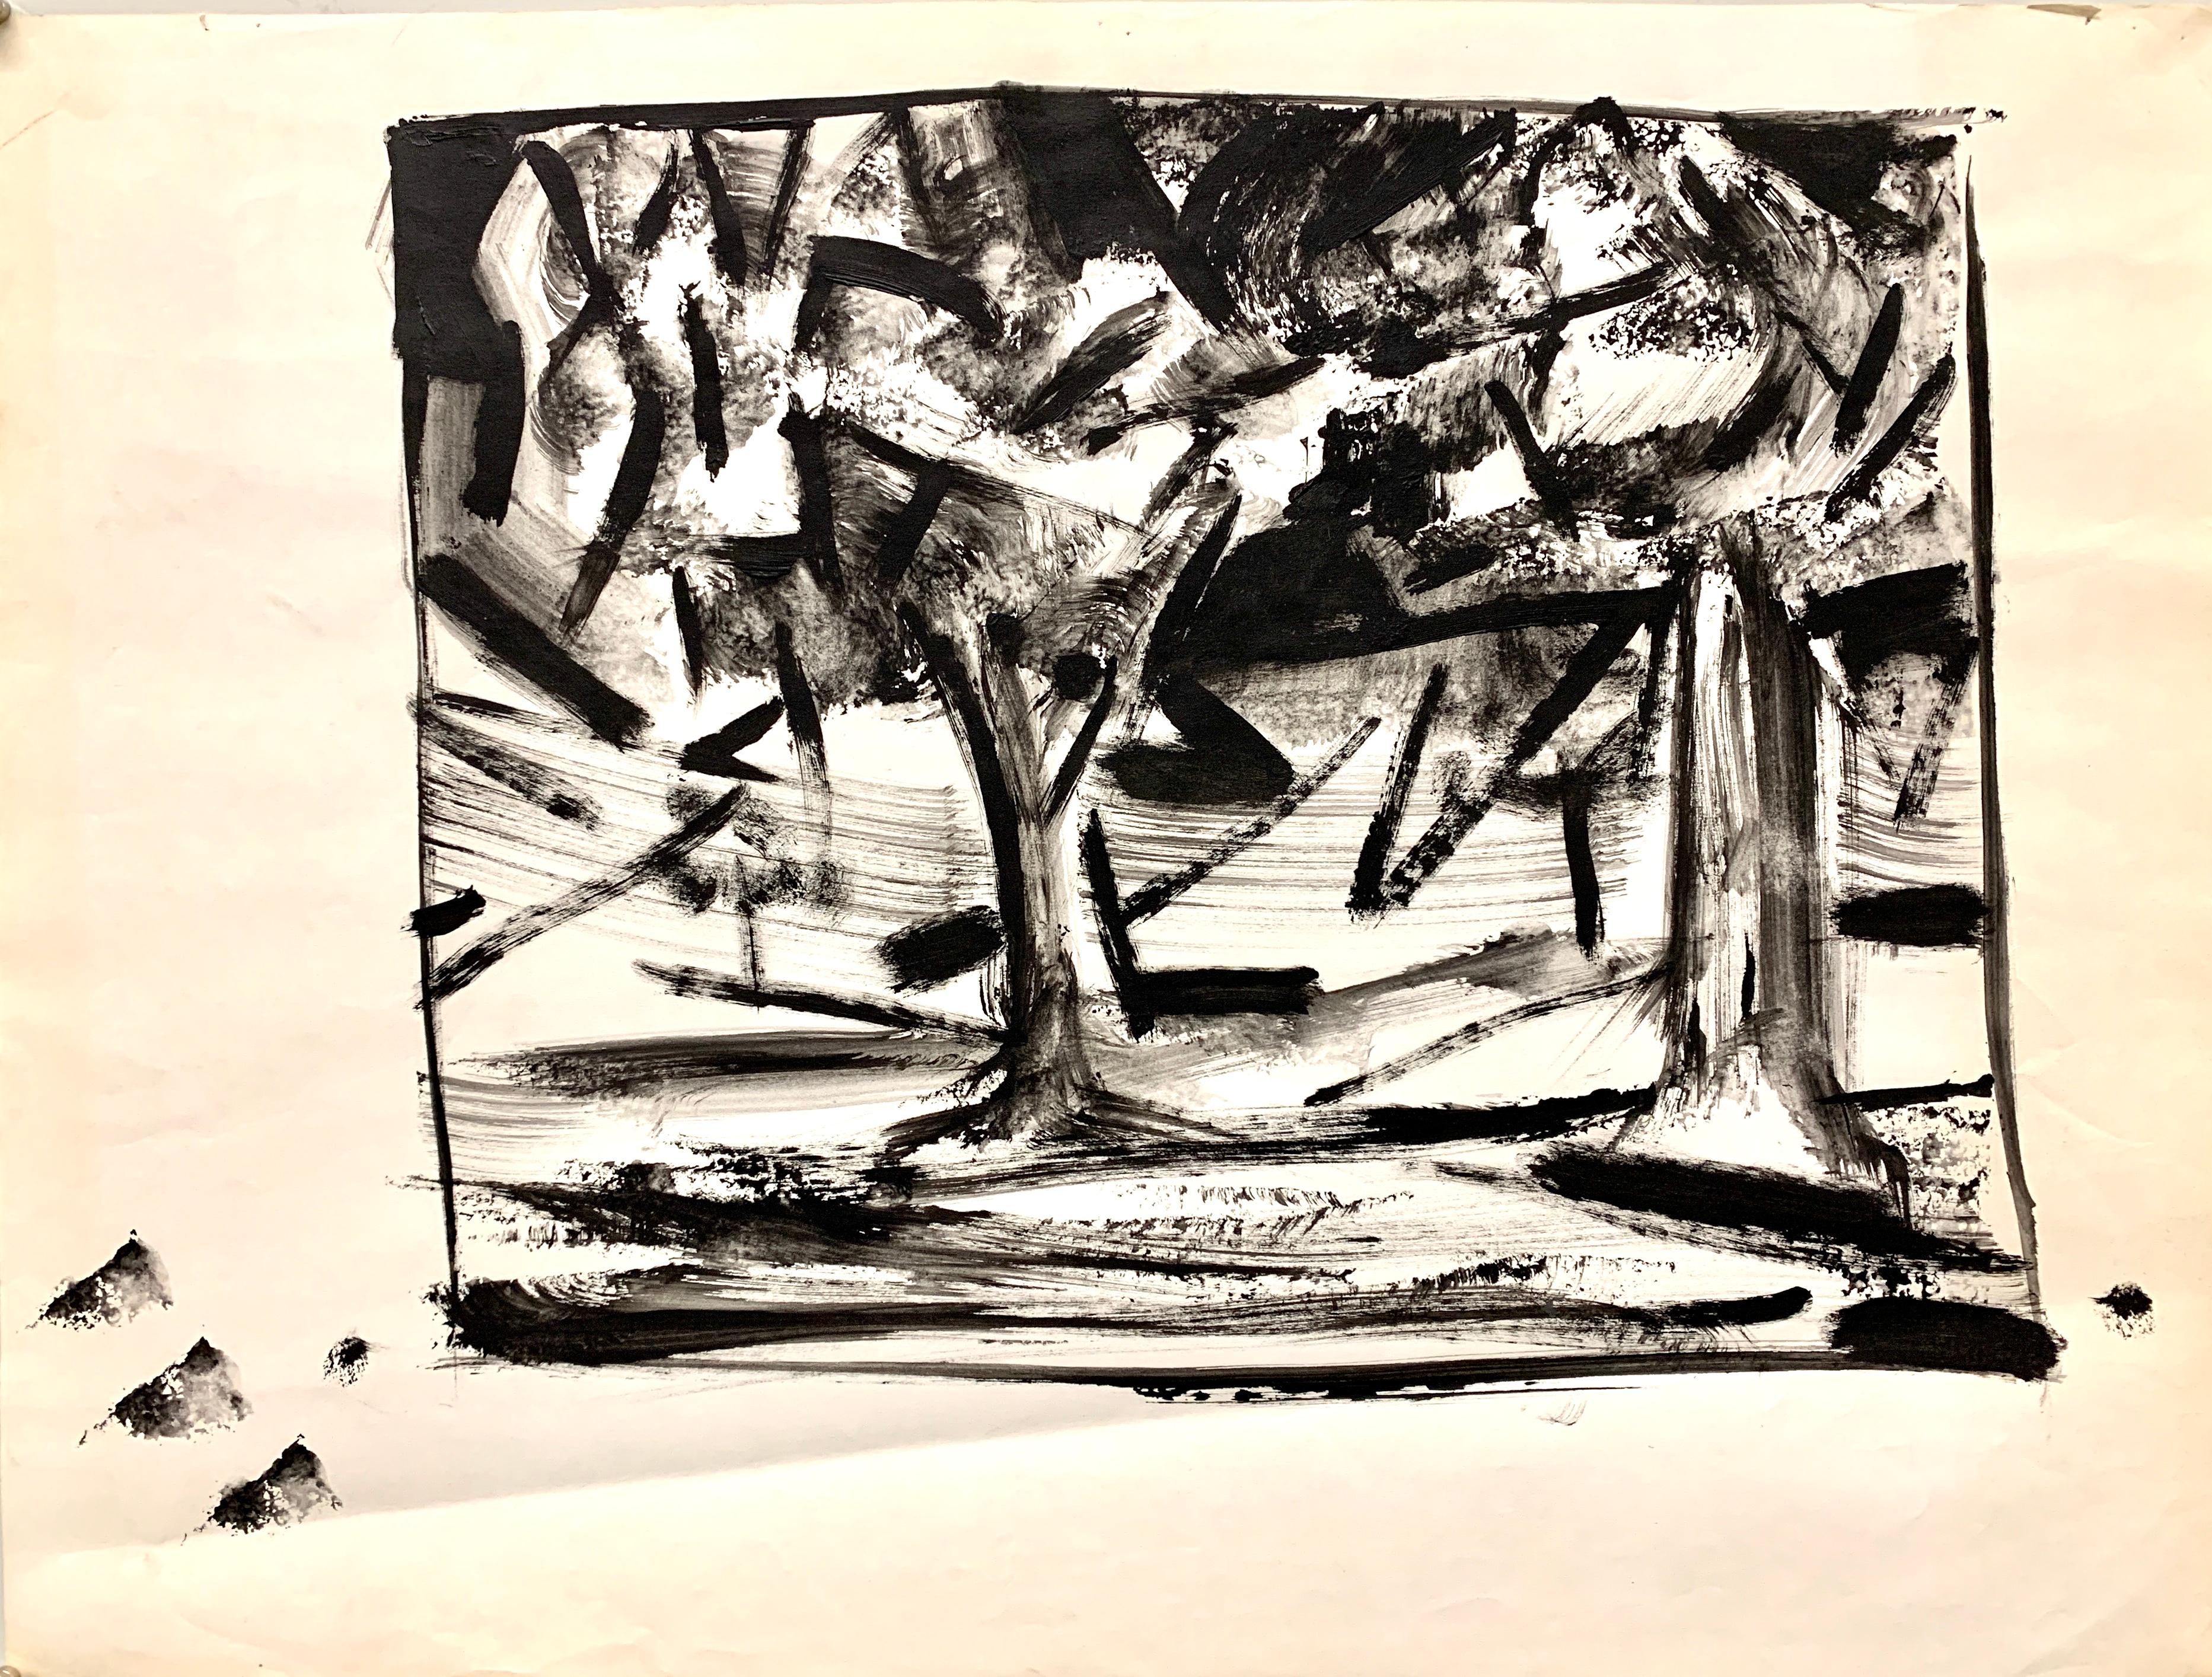 Abstrakte Landschaftsmalerei „Two Trees“, Mid-Century Modern, amerikanische Moderne, 1950er Jahre (Amerikanische Moderne), Painting, von Donald Stacy